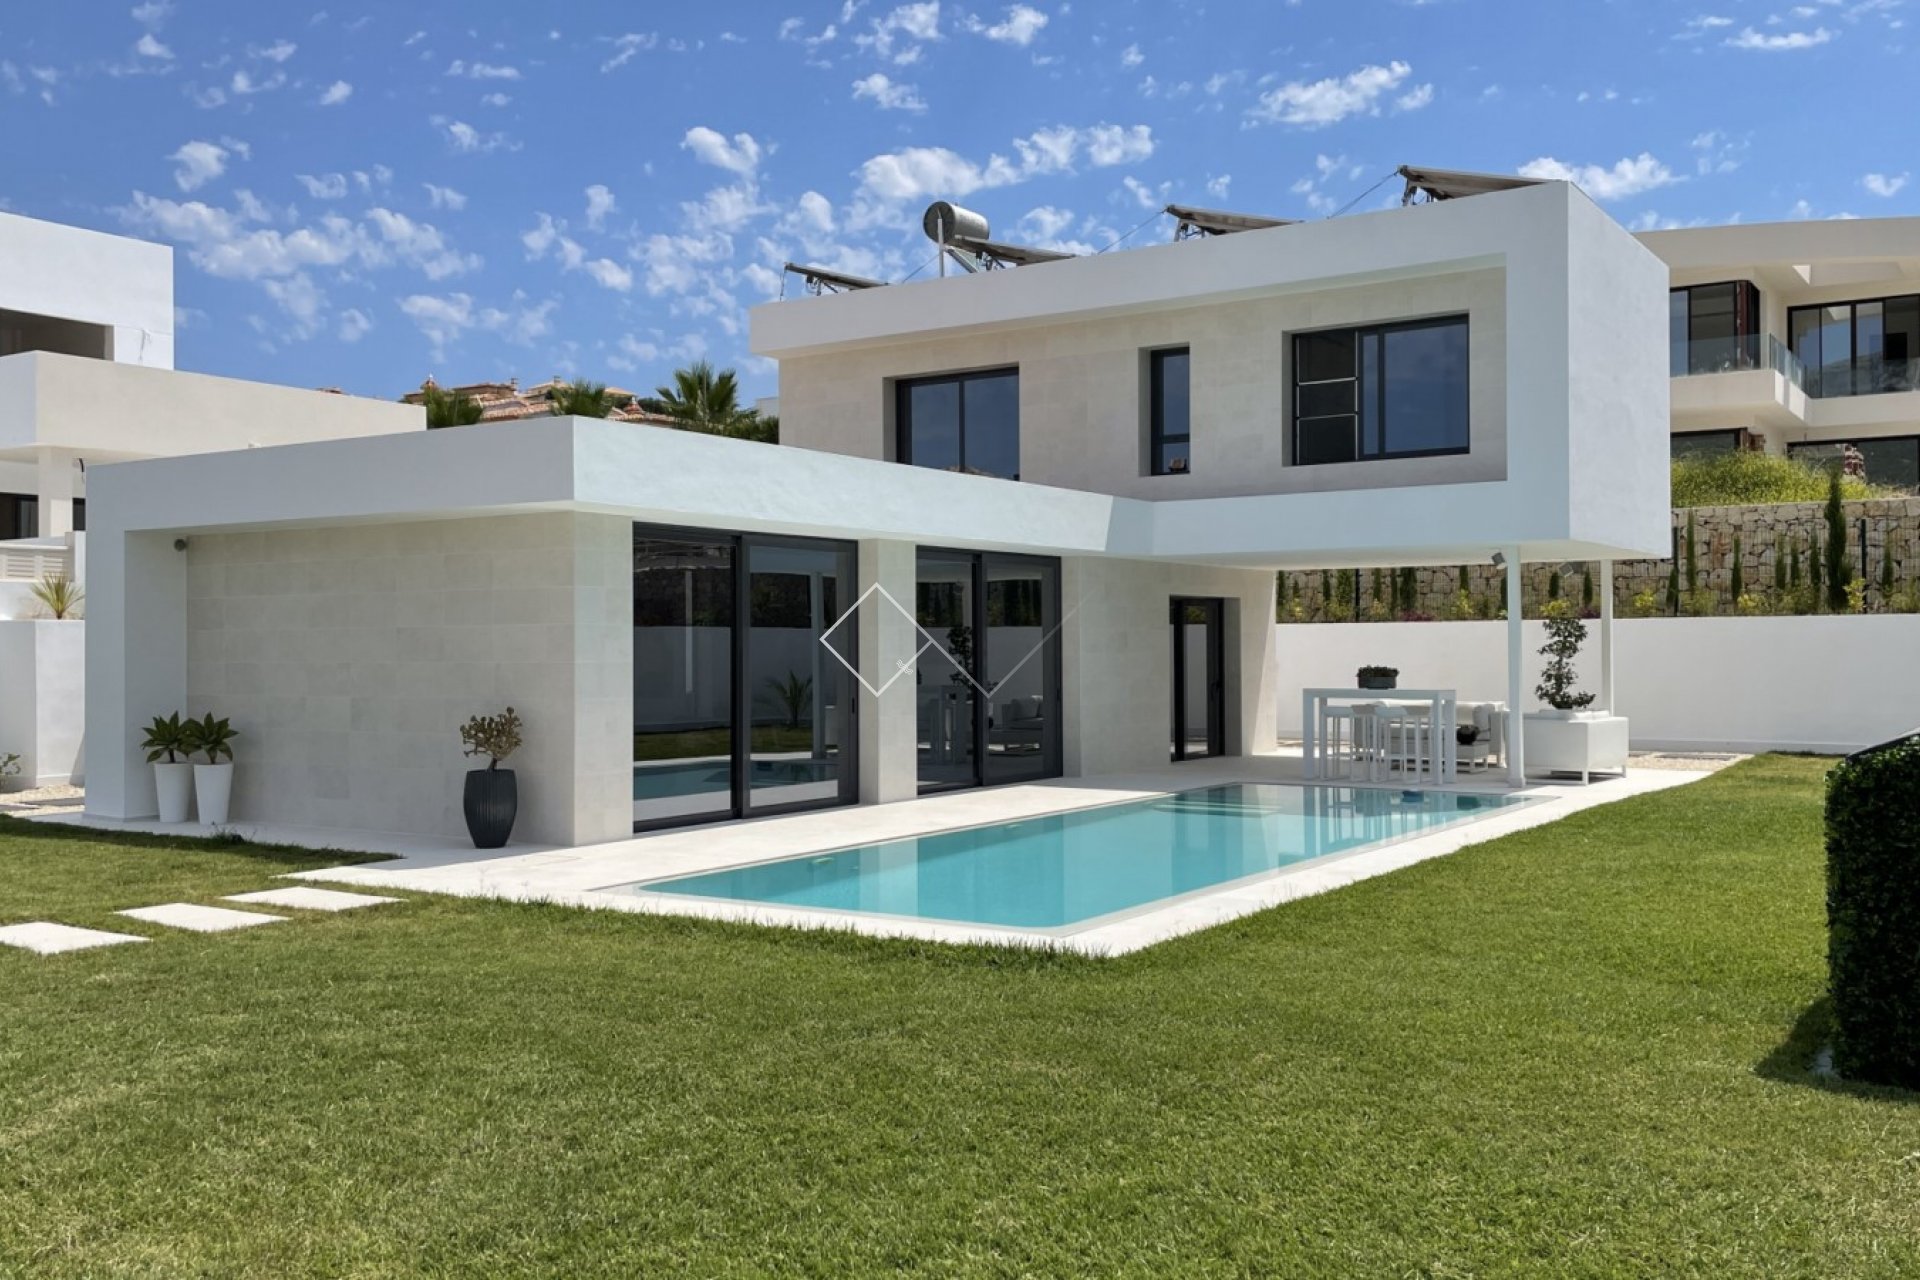 Moderne Villa zum Verkauf in der Nähe von Strand und Zentrum von Calpe